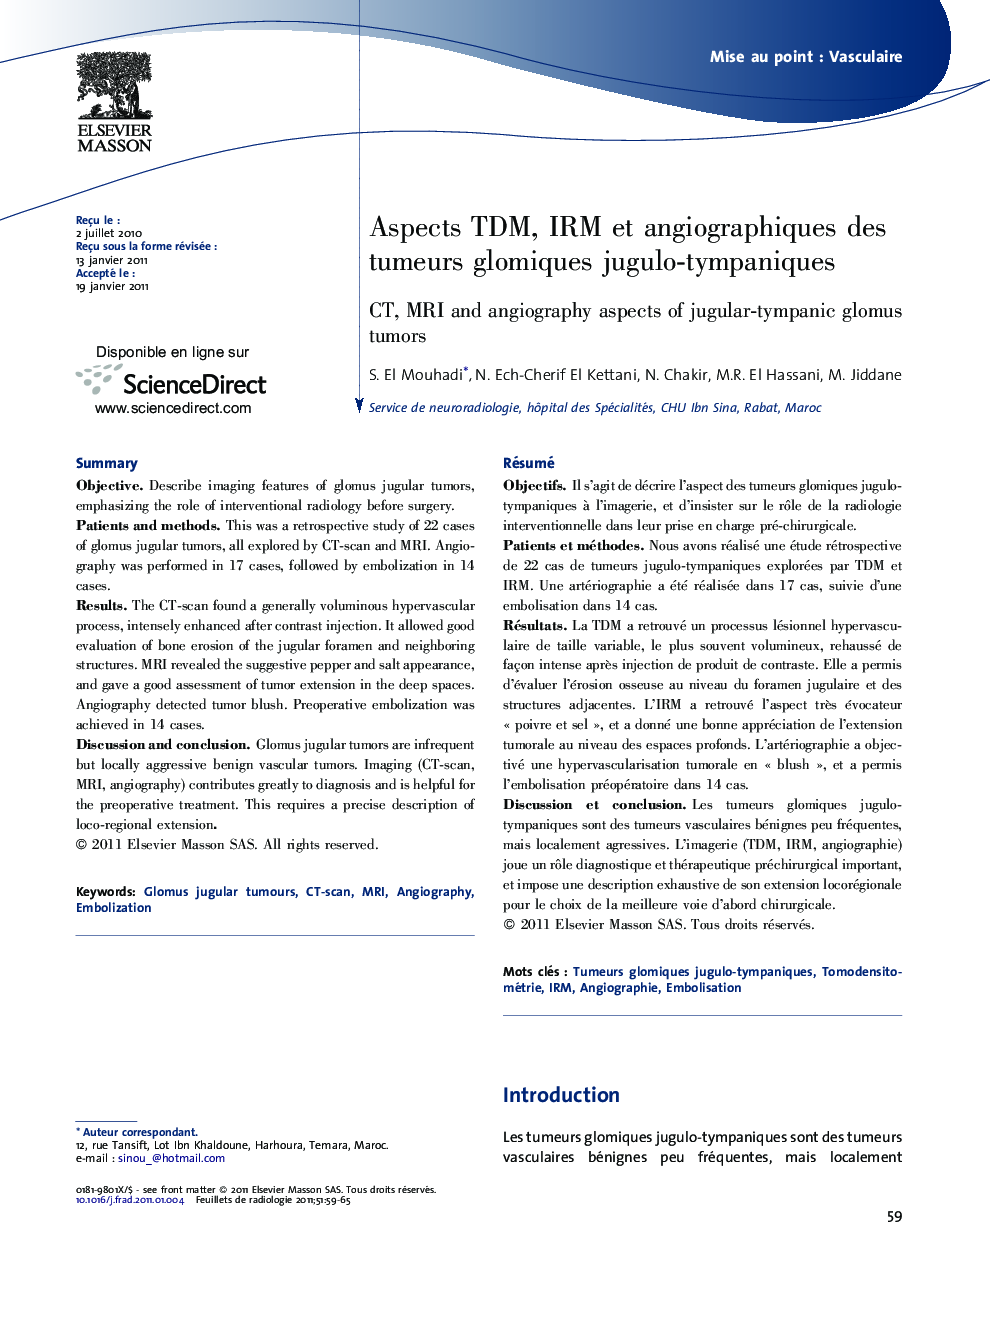 Aspects TDM, IRM et angiographiques des tumeurs glomiques jugulo-tympaniques